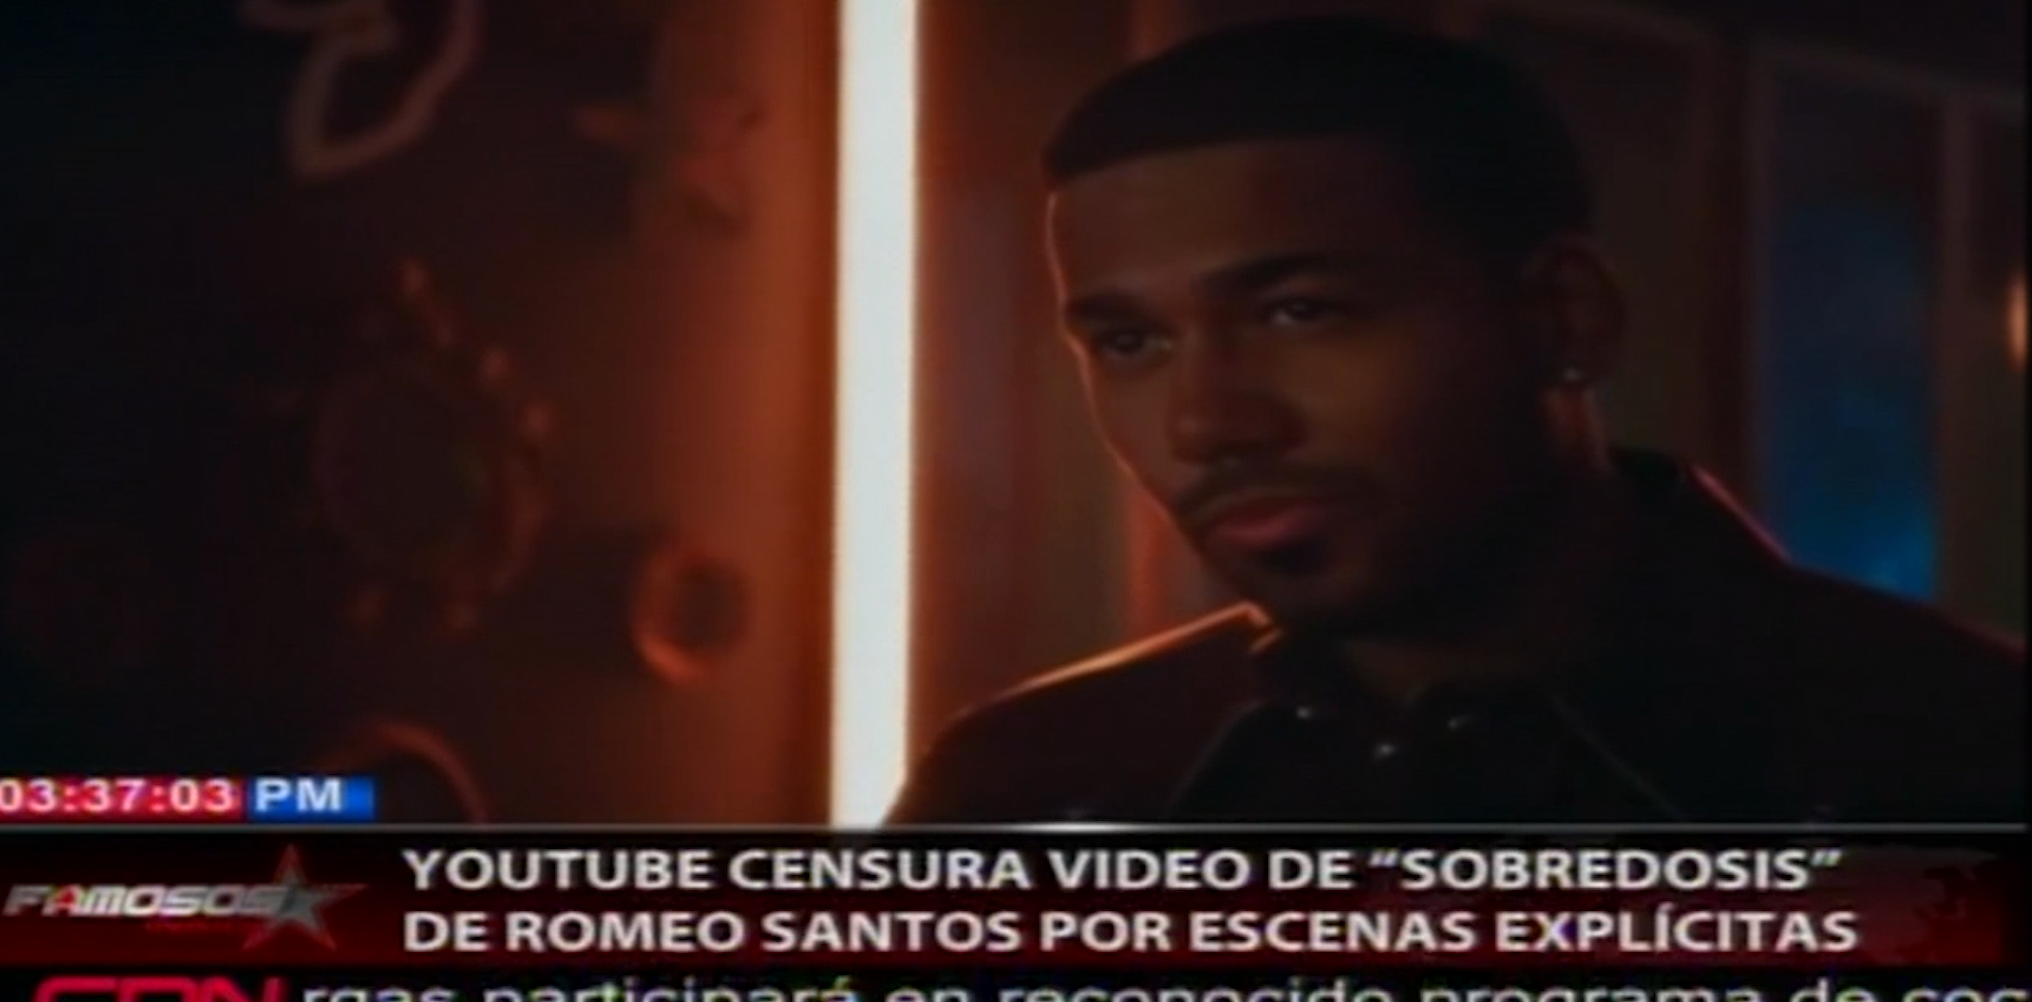 Romeo Santos Tuvo Que Editar Su Video “Sobredosis” Tras Censura De Youtube Por Imágenes Explícitas